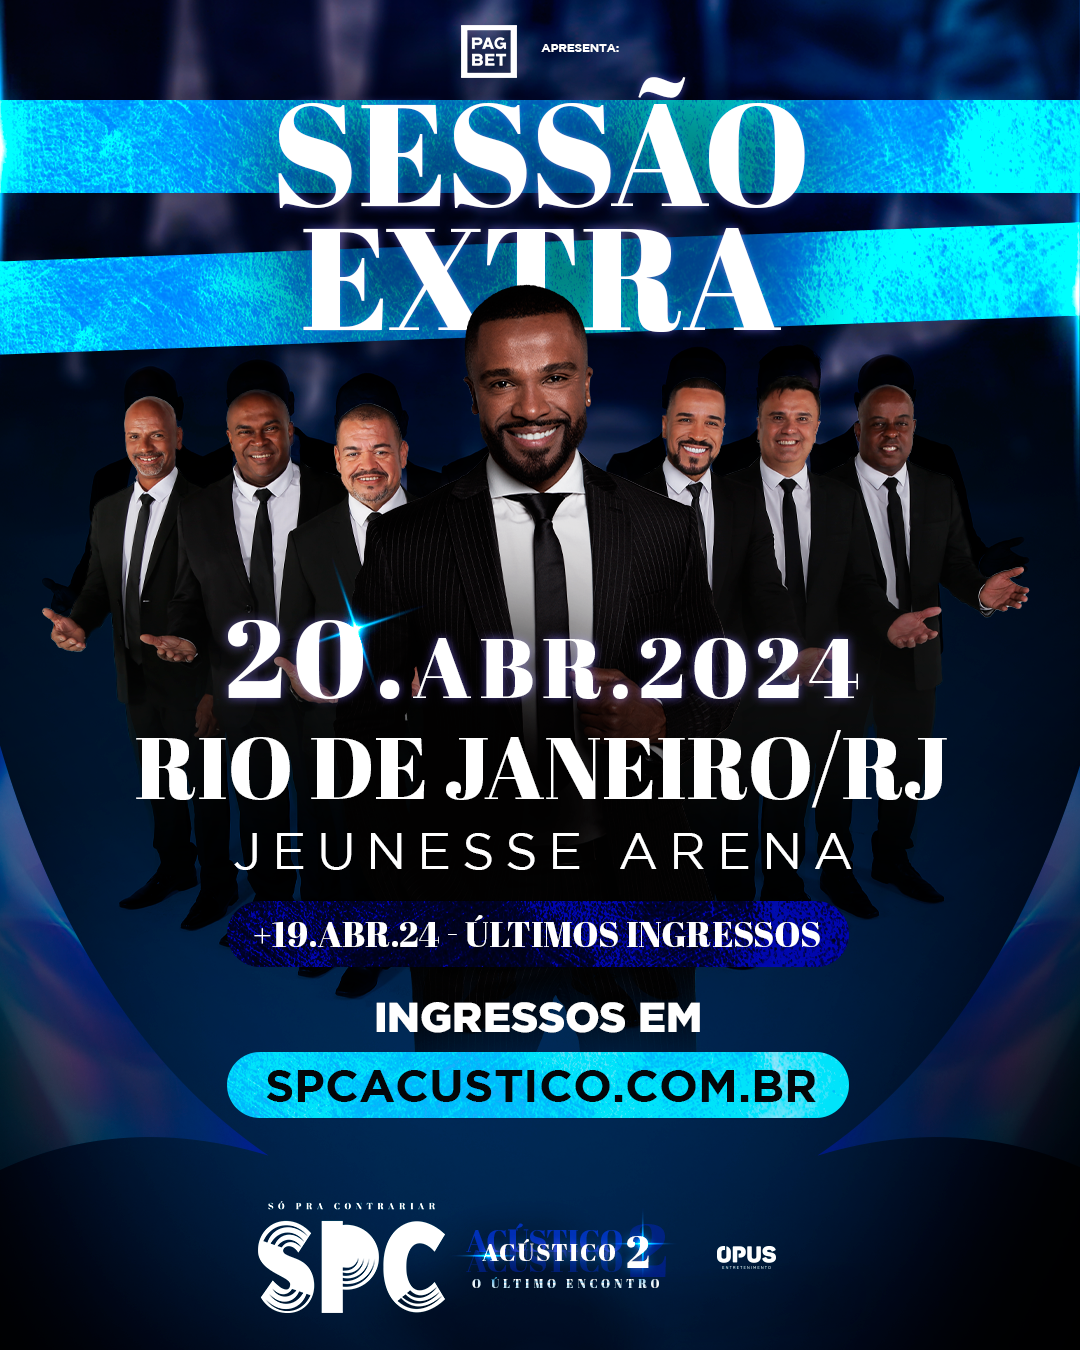 So Pra Contrariar As Melhores, SPC As Melhores, SPC ACÚSTICO 2 – ÚLTIMO  ENCONTRO - playlist by Sony Music Brasil